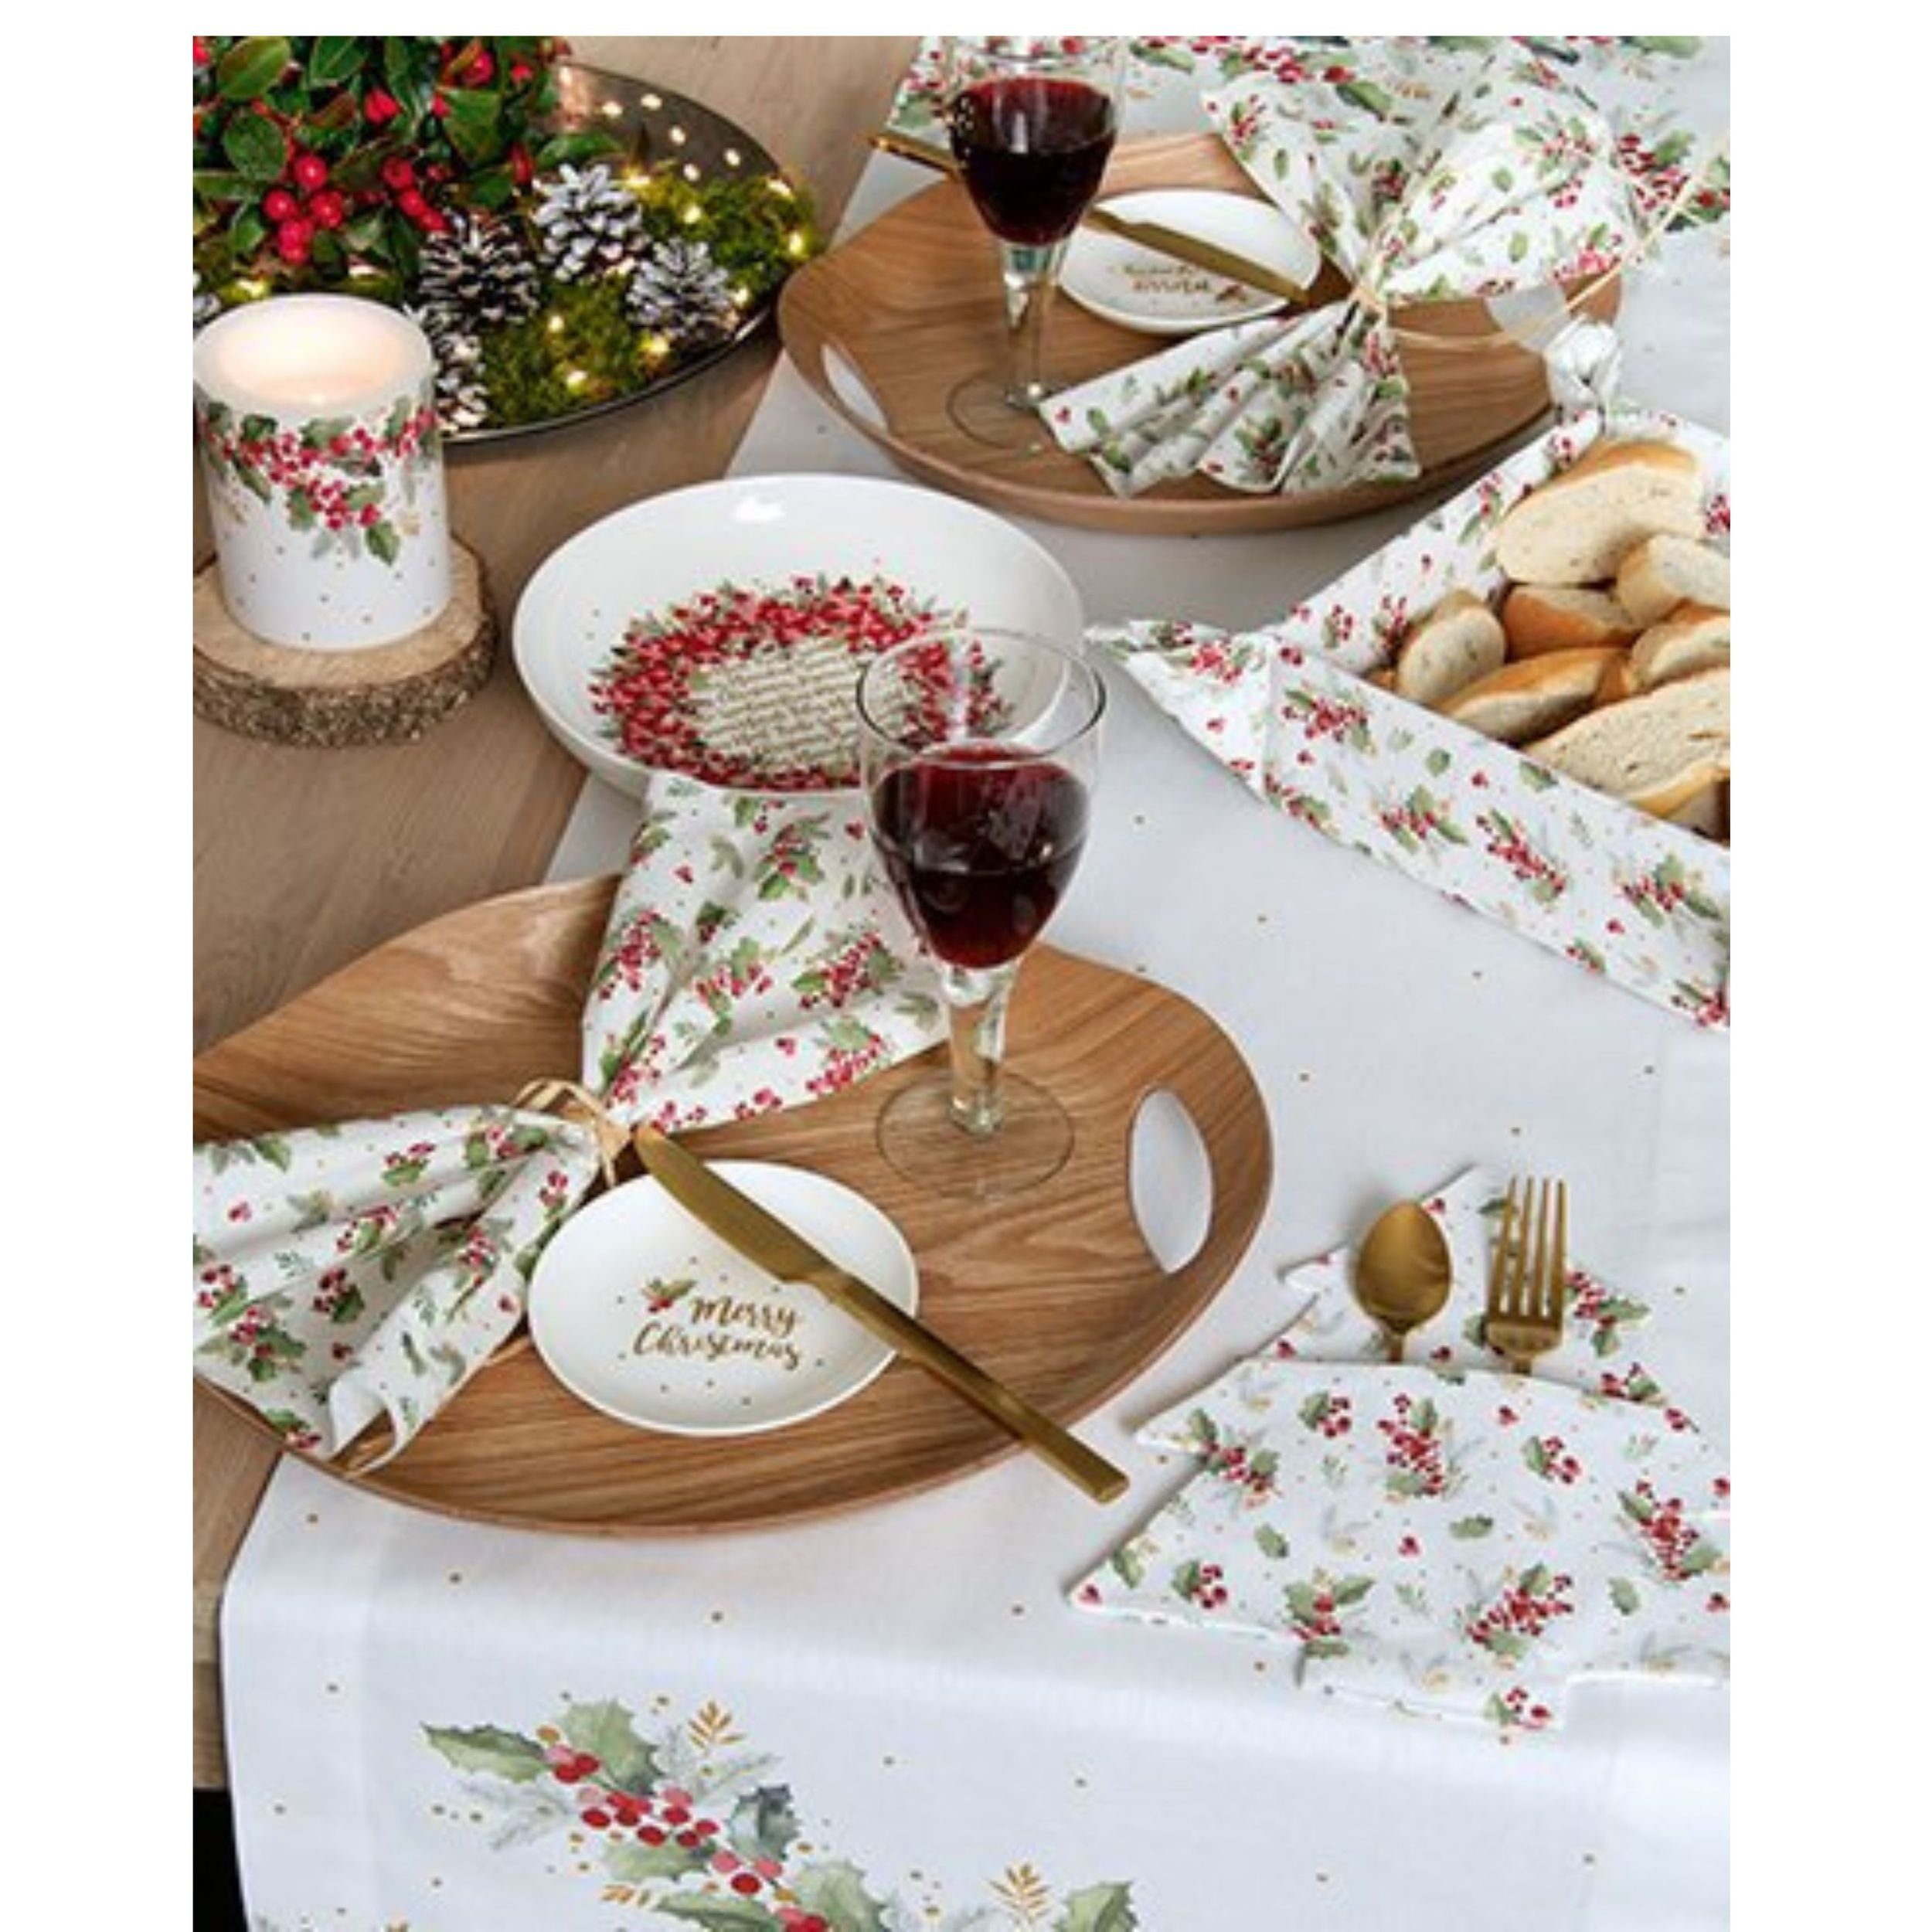 300ml Dekoschale Cynthia Ilex Gedeckter Cream IHR Weihnachten Stechpalme Wreath Porzellanschale Schale Tisch